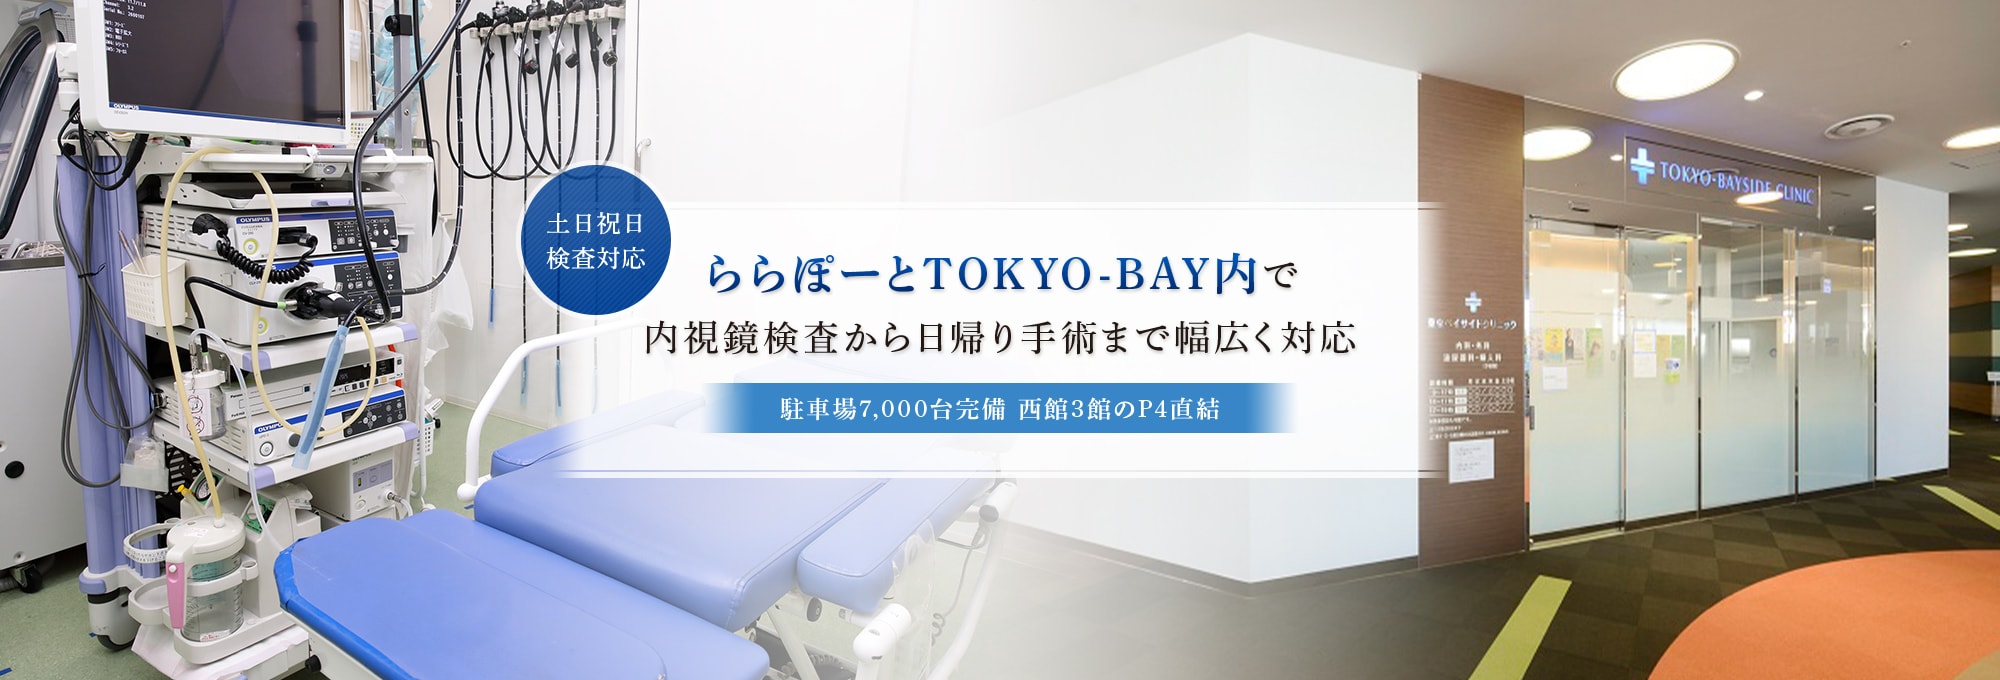 ららぽーとTOKYO-BAY内で内視鏡検査から日帰り手術まで幅広く対応